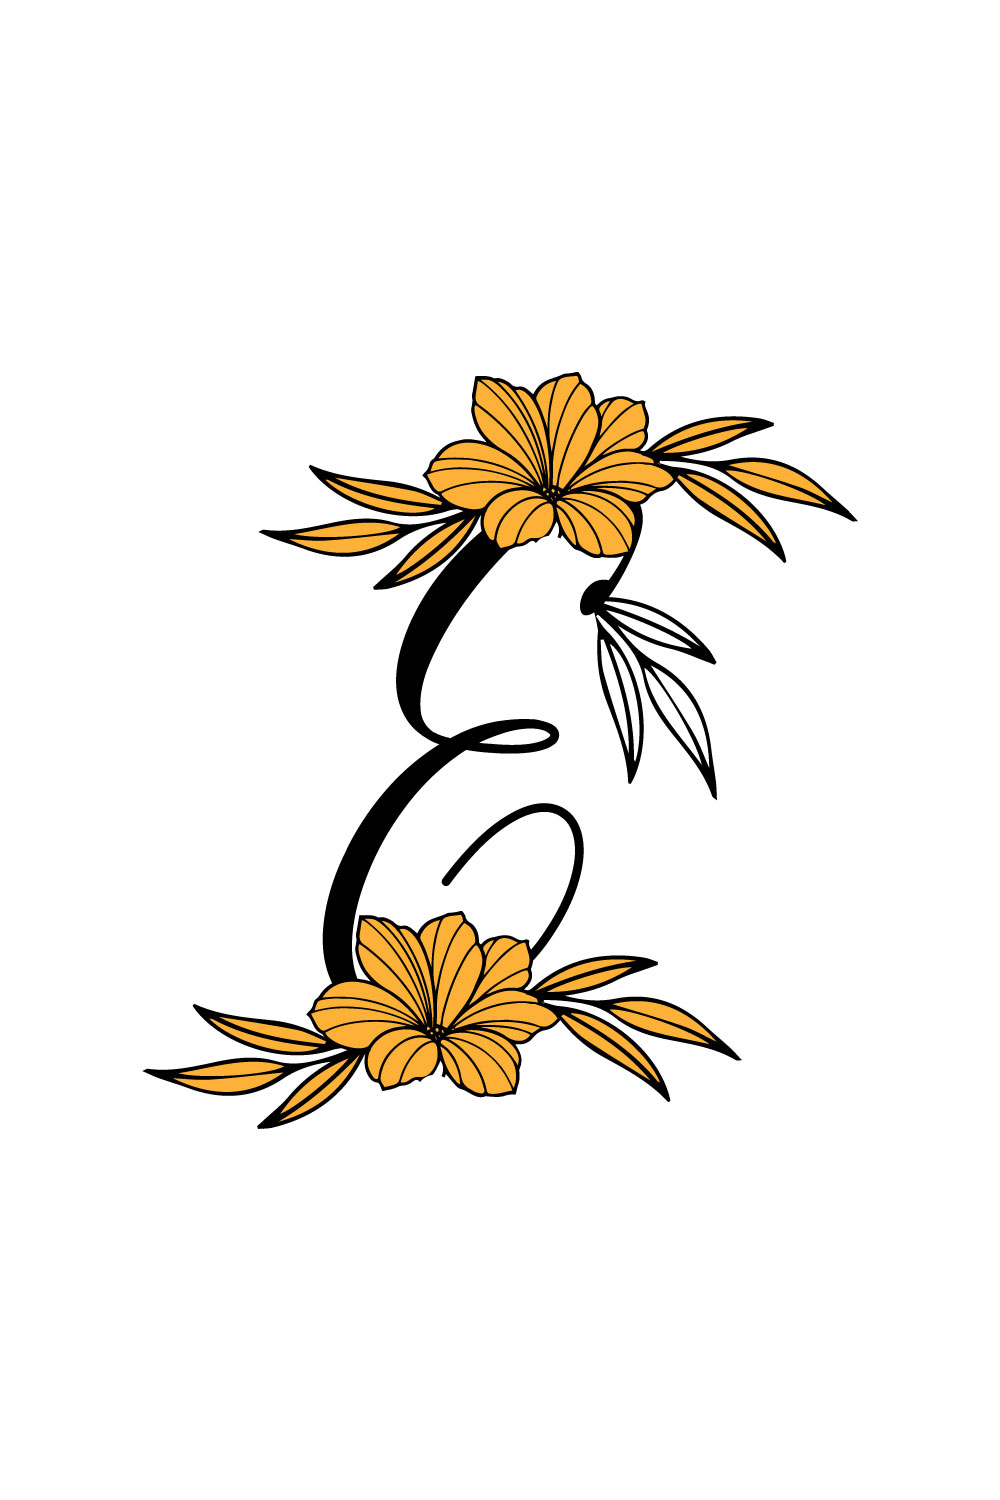 Free G Letter Flower Logo pinterest preview image.